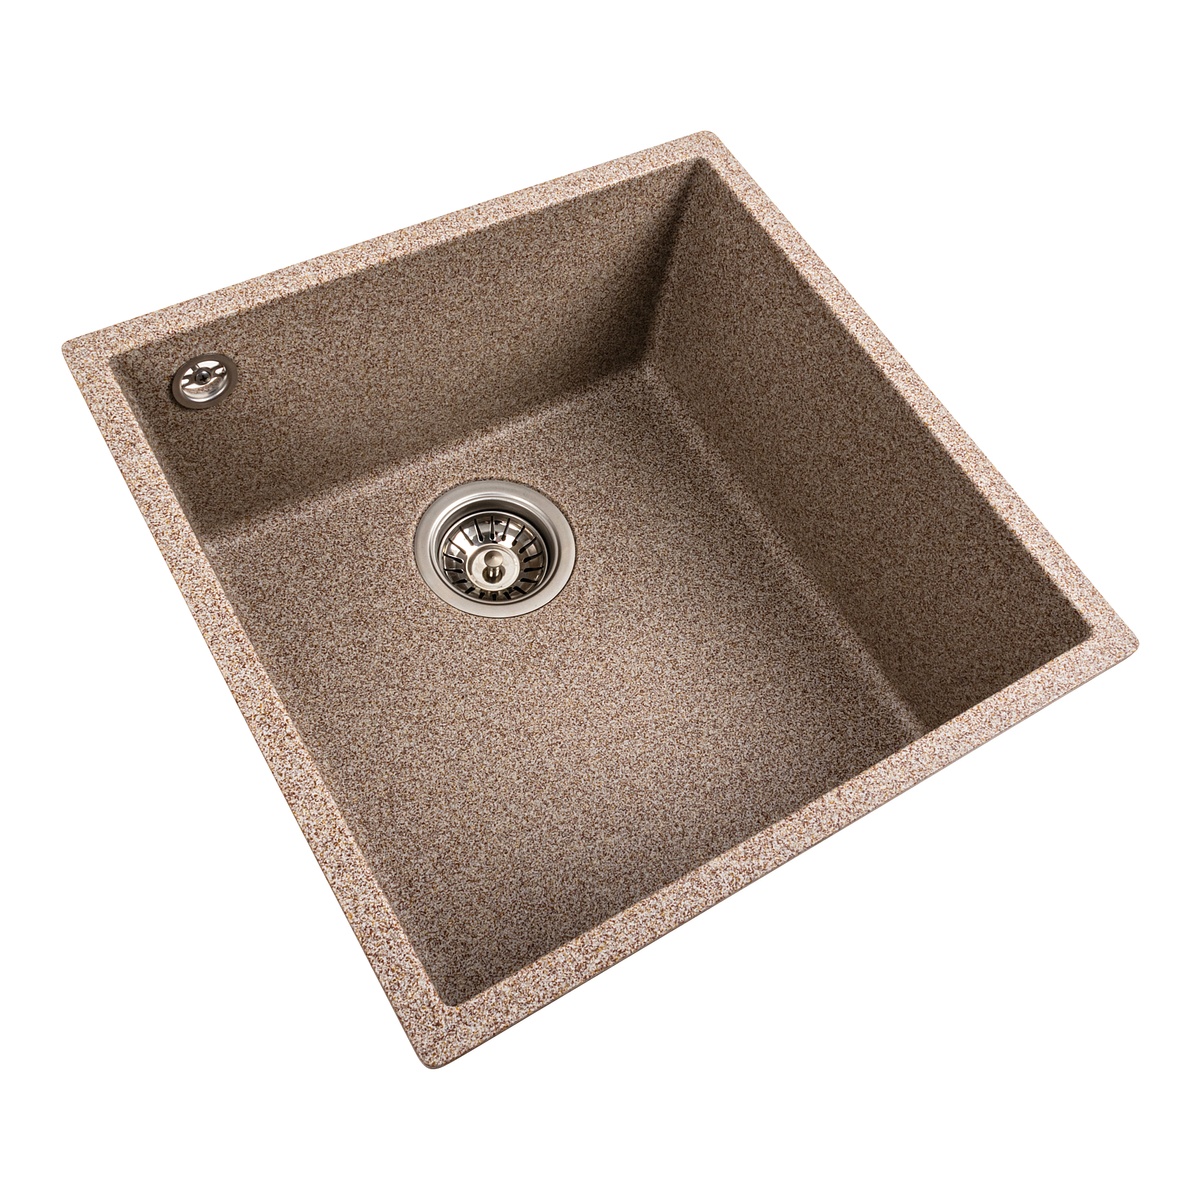 Мийка для кухні гранітна квадратна PLATINUM 4040 RUBA 440x440x200мм без сифону бежева PLS-A40838